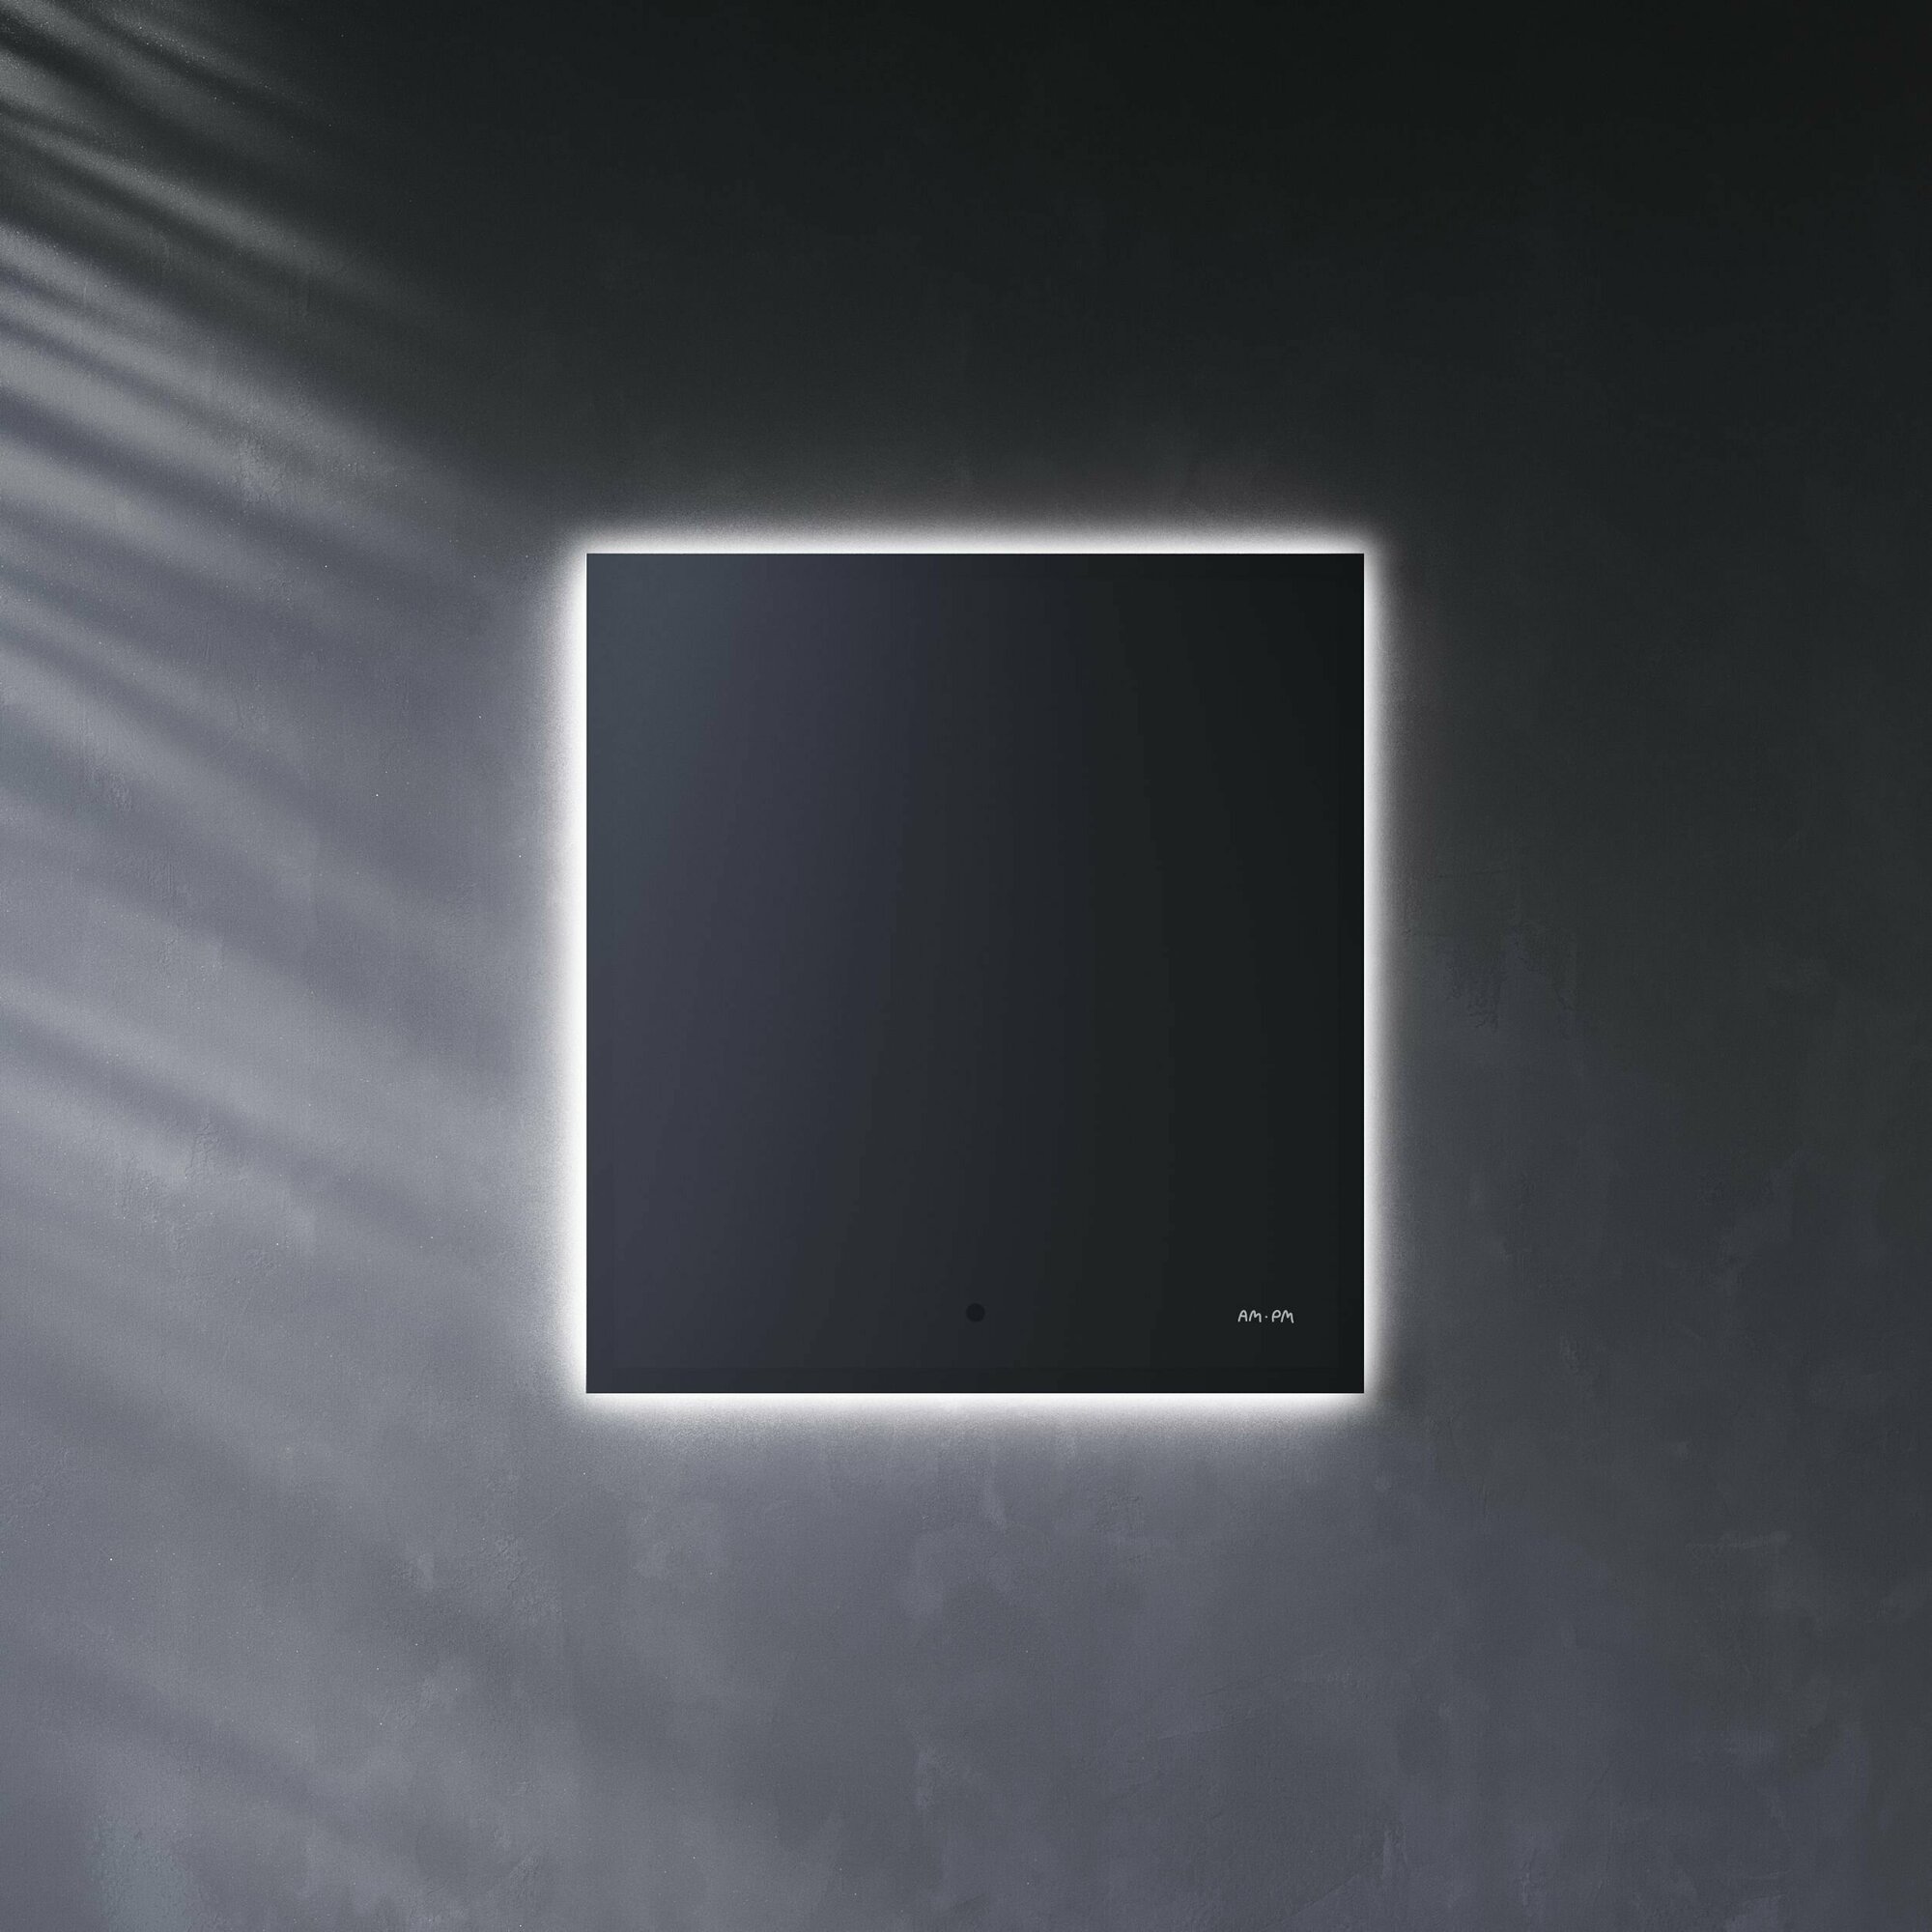 Зеркало для ванной AM.PM Brava 60 см, интерьерная LED-подсветка по периметру, бесконтактный ИК-сенсор, функция диммирования,